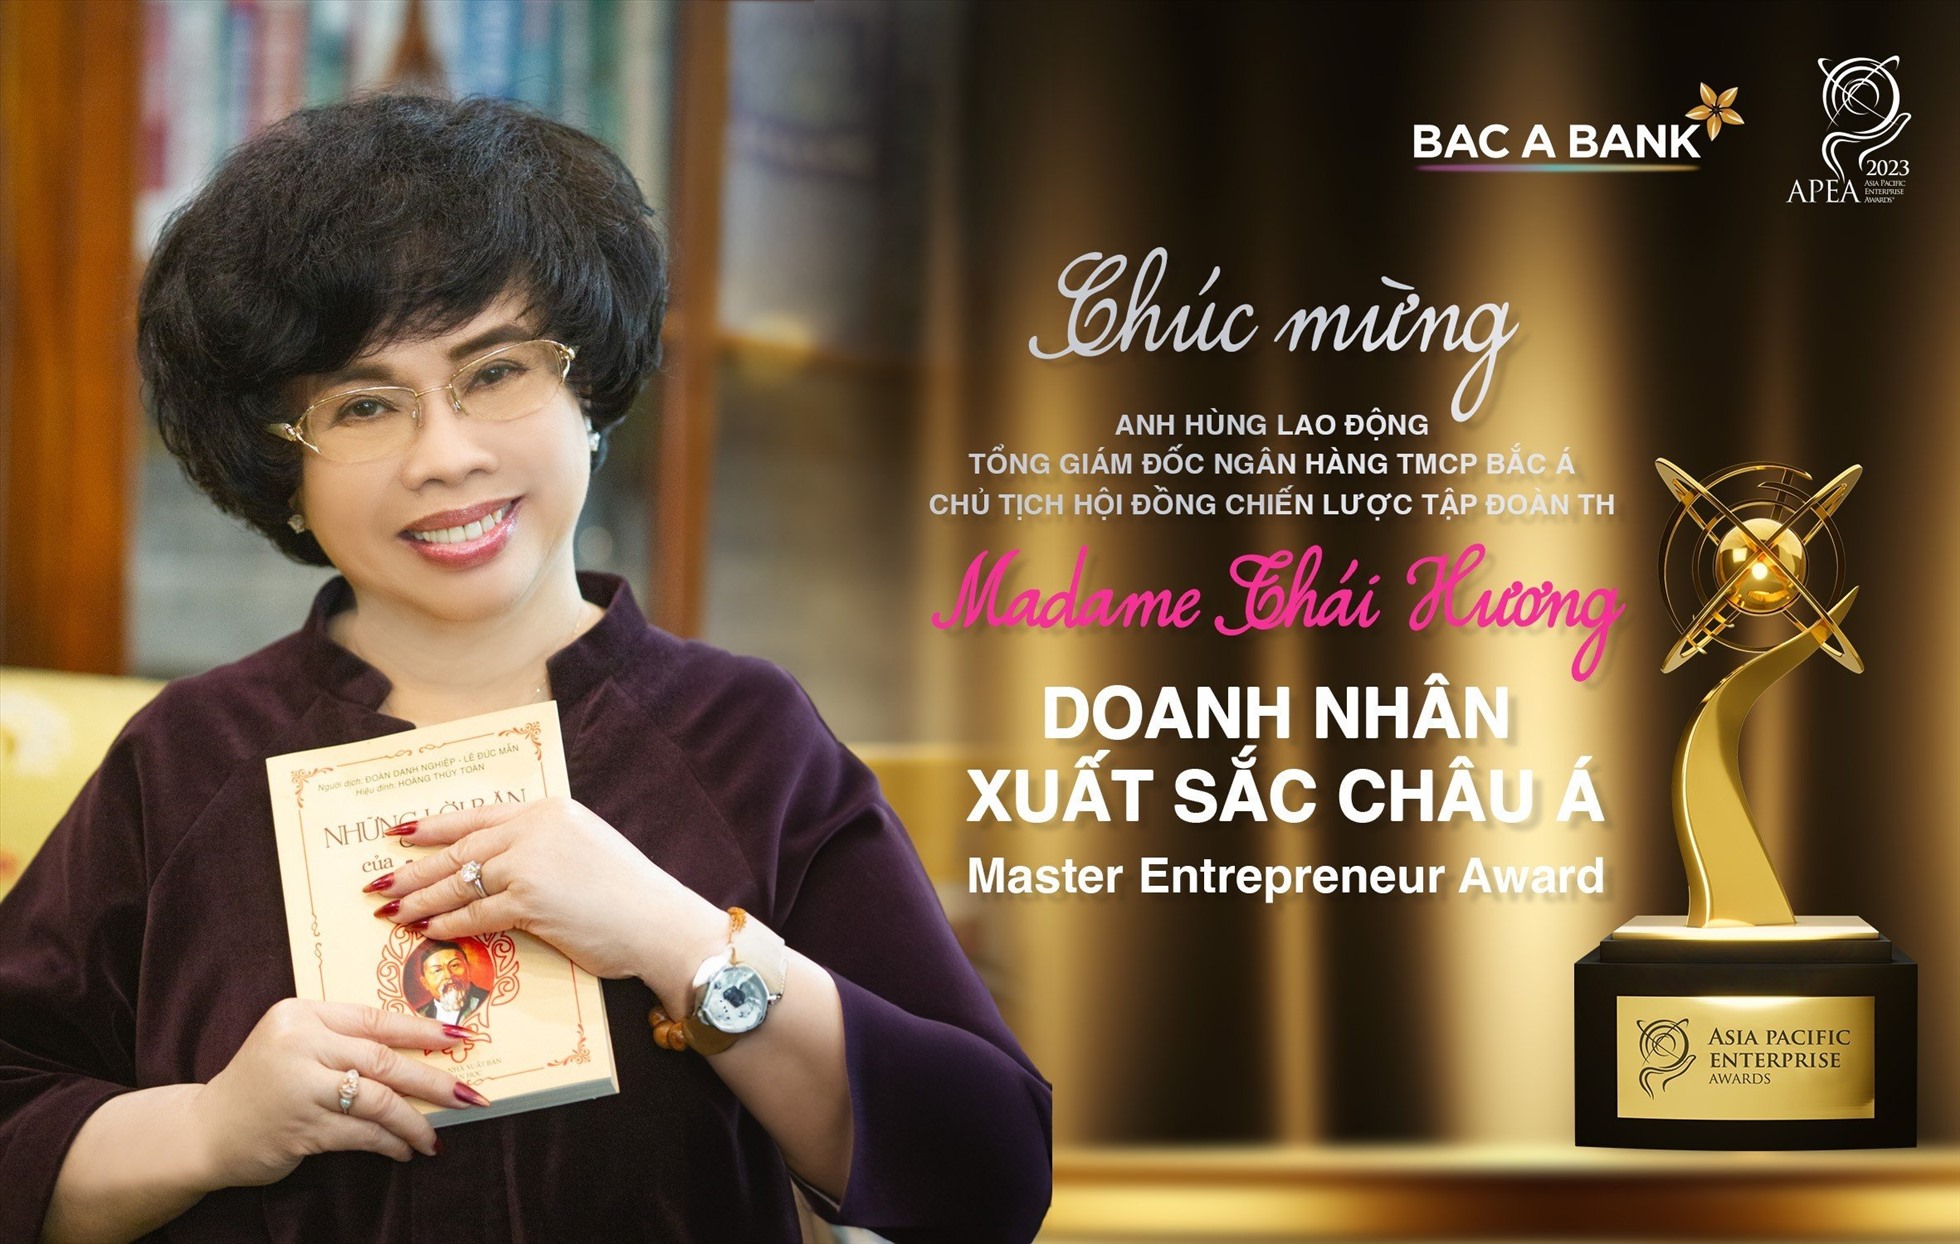 Tổng Giám đốc Bac A Bank, nữ doanh nhân Anh hùng lao động Thái Hương đã có nhiều thành tích xuất sắc trong lãnh đạo, điều hành doanh nghiệp. Ảnh: Bac A Bank